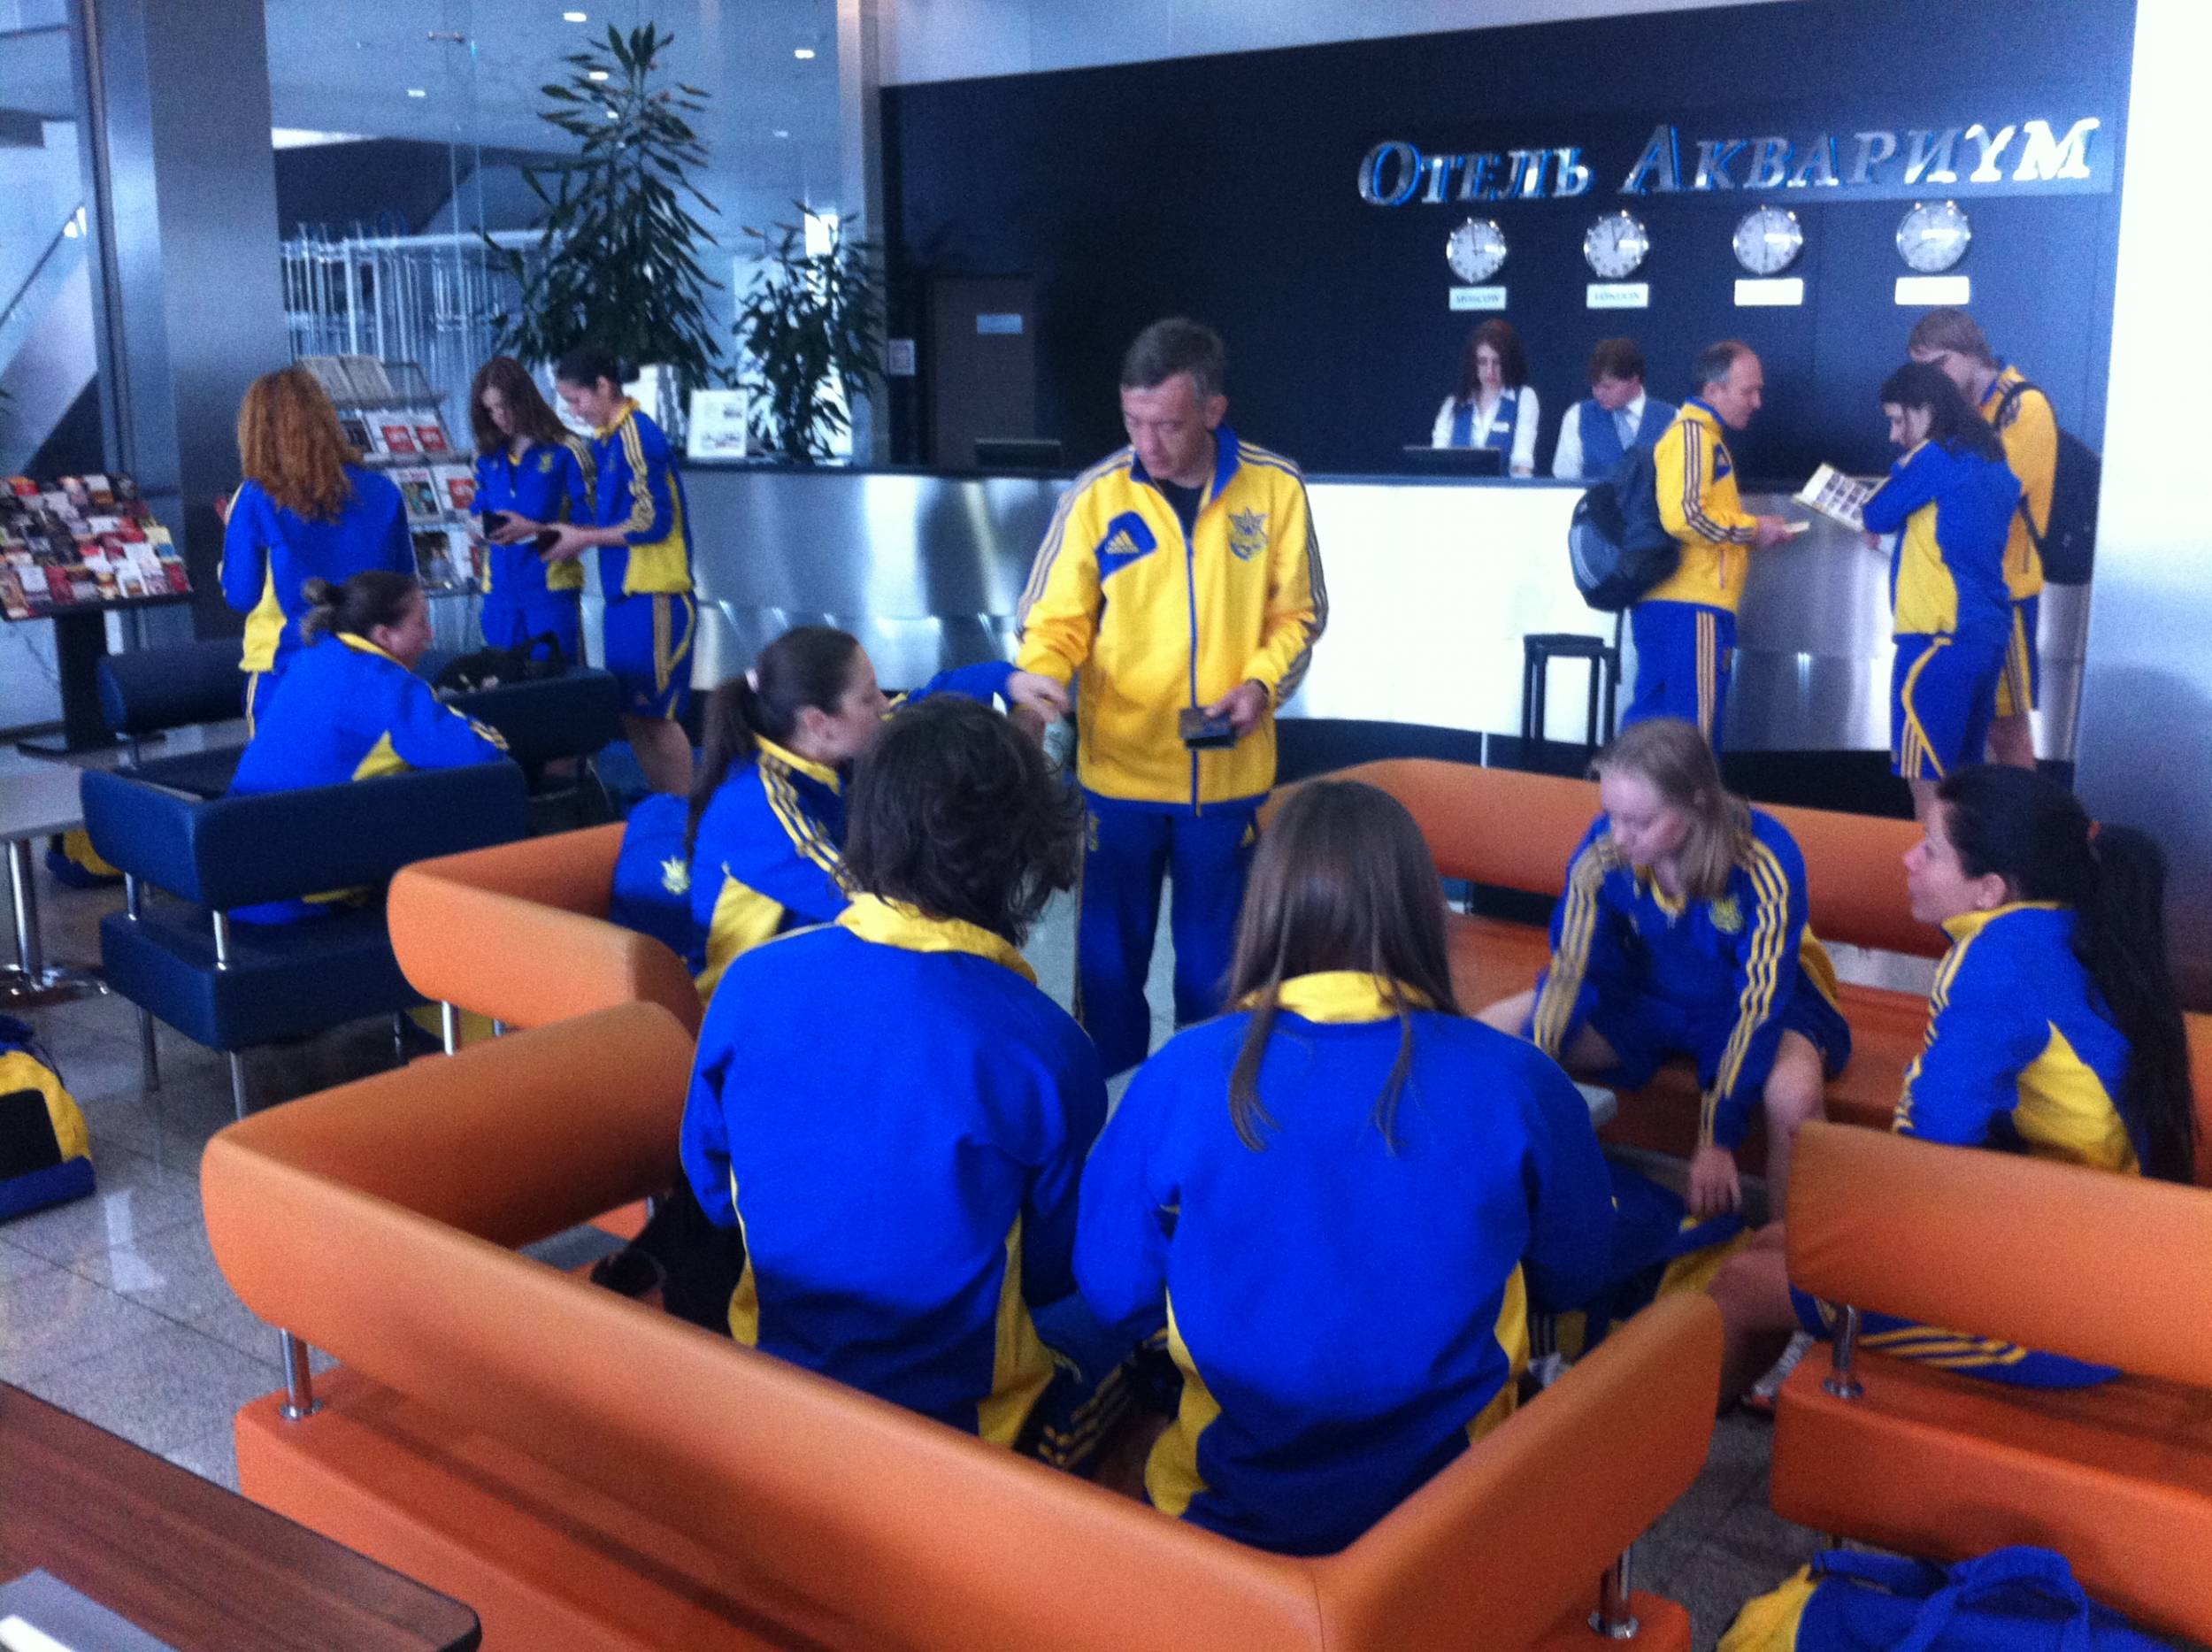 мини-футбол, женская сборная Украины, женская сборная России, посвященный 9 мая 2013, женский футзал, Международный женский турнир